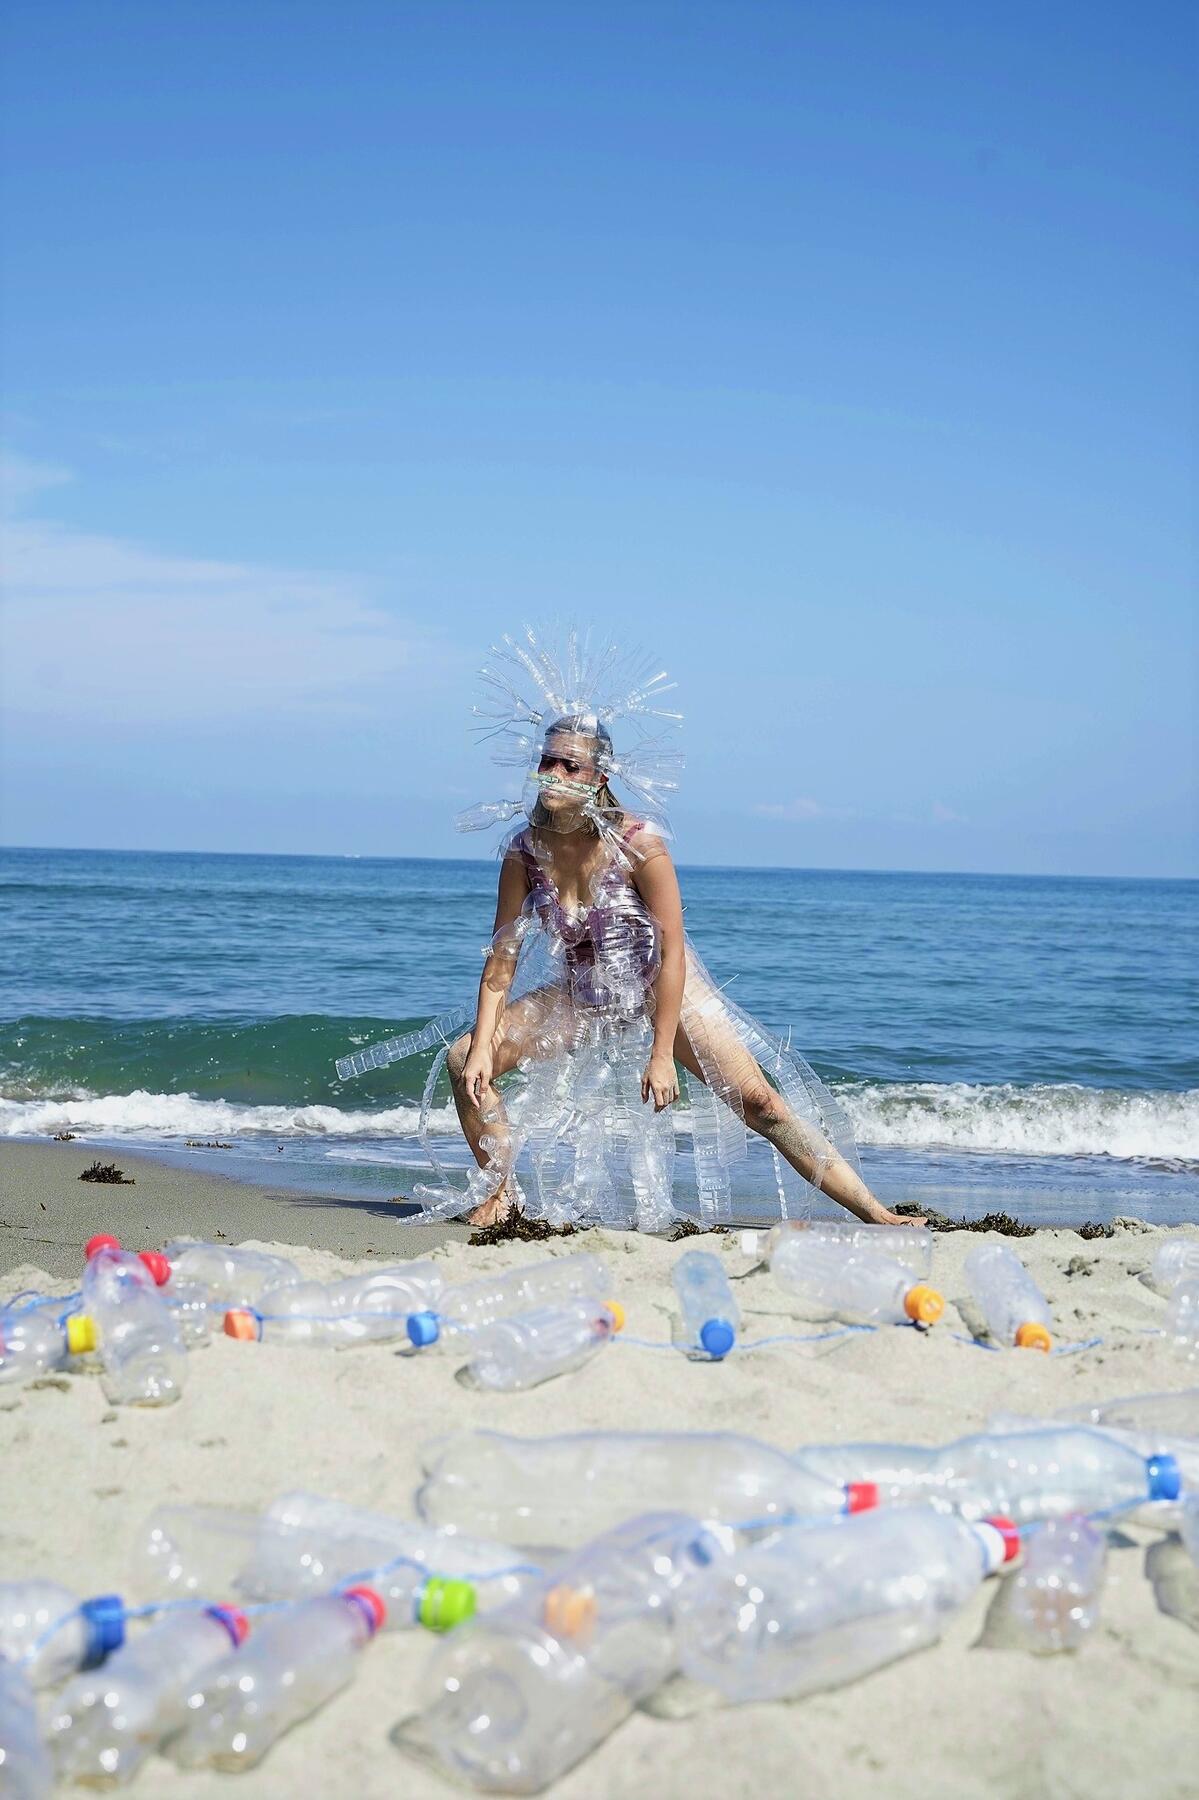 Bild vergrößern: Screenshot aus dem Video "Bari-bari" von Ea Torrado and Chino Neri mit einer Tänzerin am Strand, deren Kostüm aus weggeworfenen Plastikflaschen besteht.